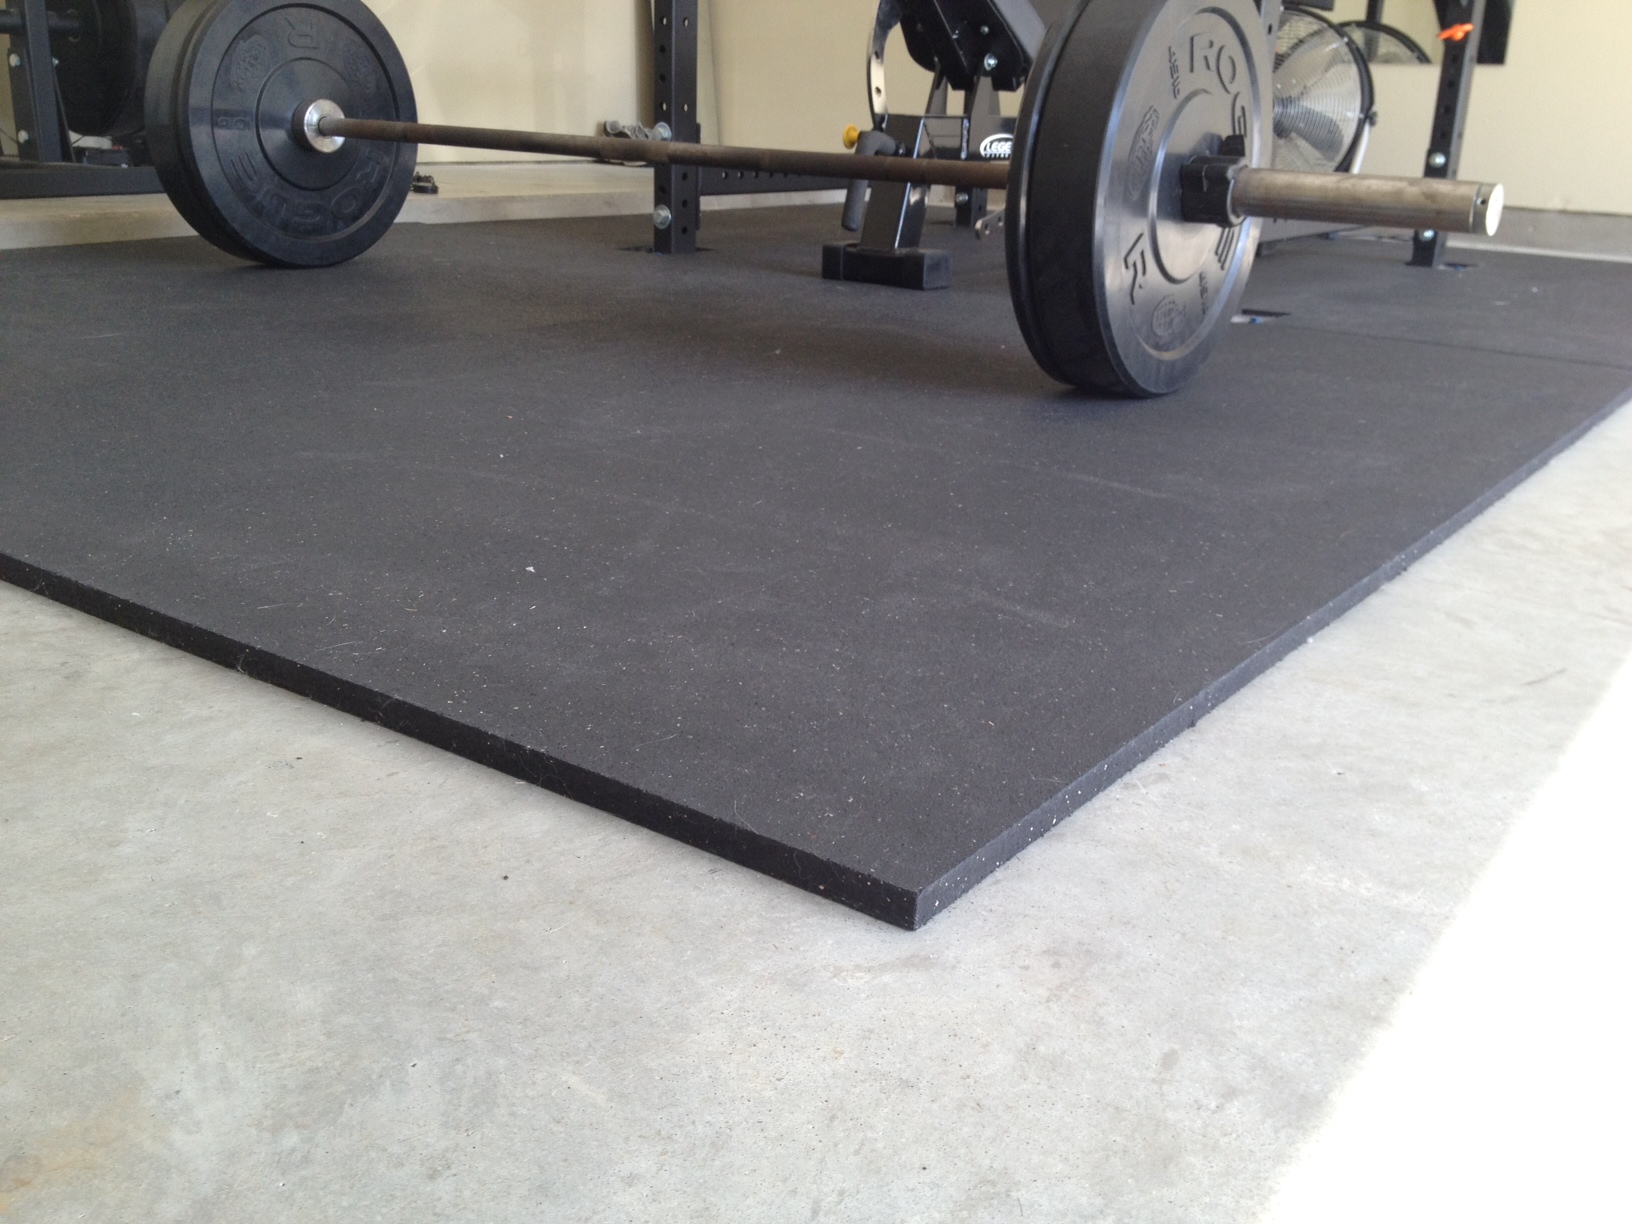  Garage Floor Workout Mats for Fat Body